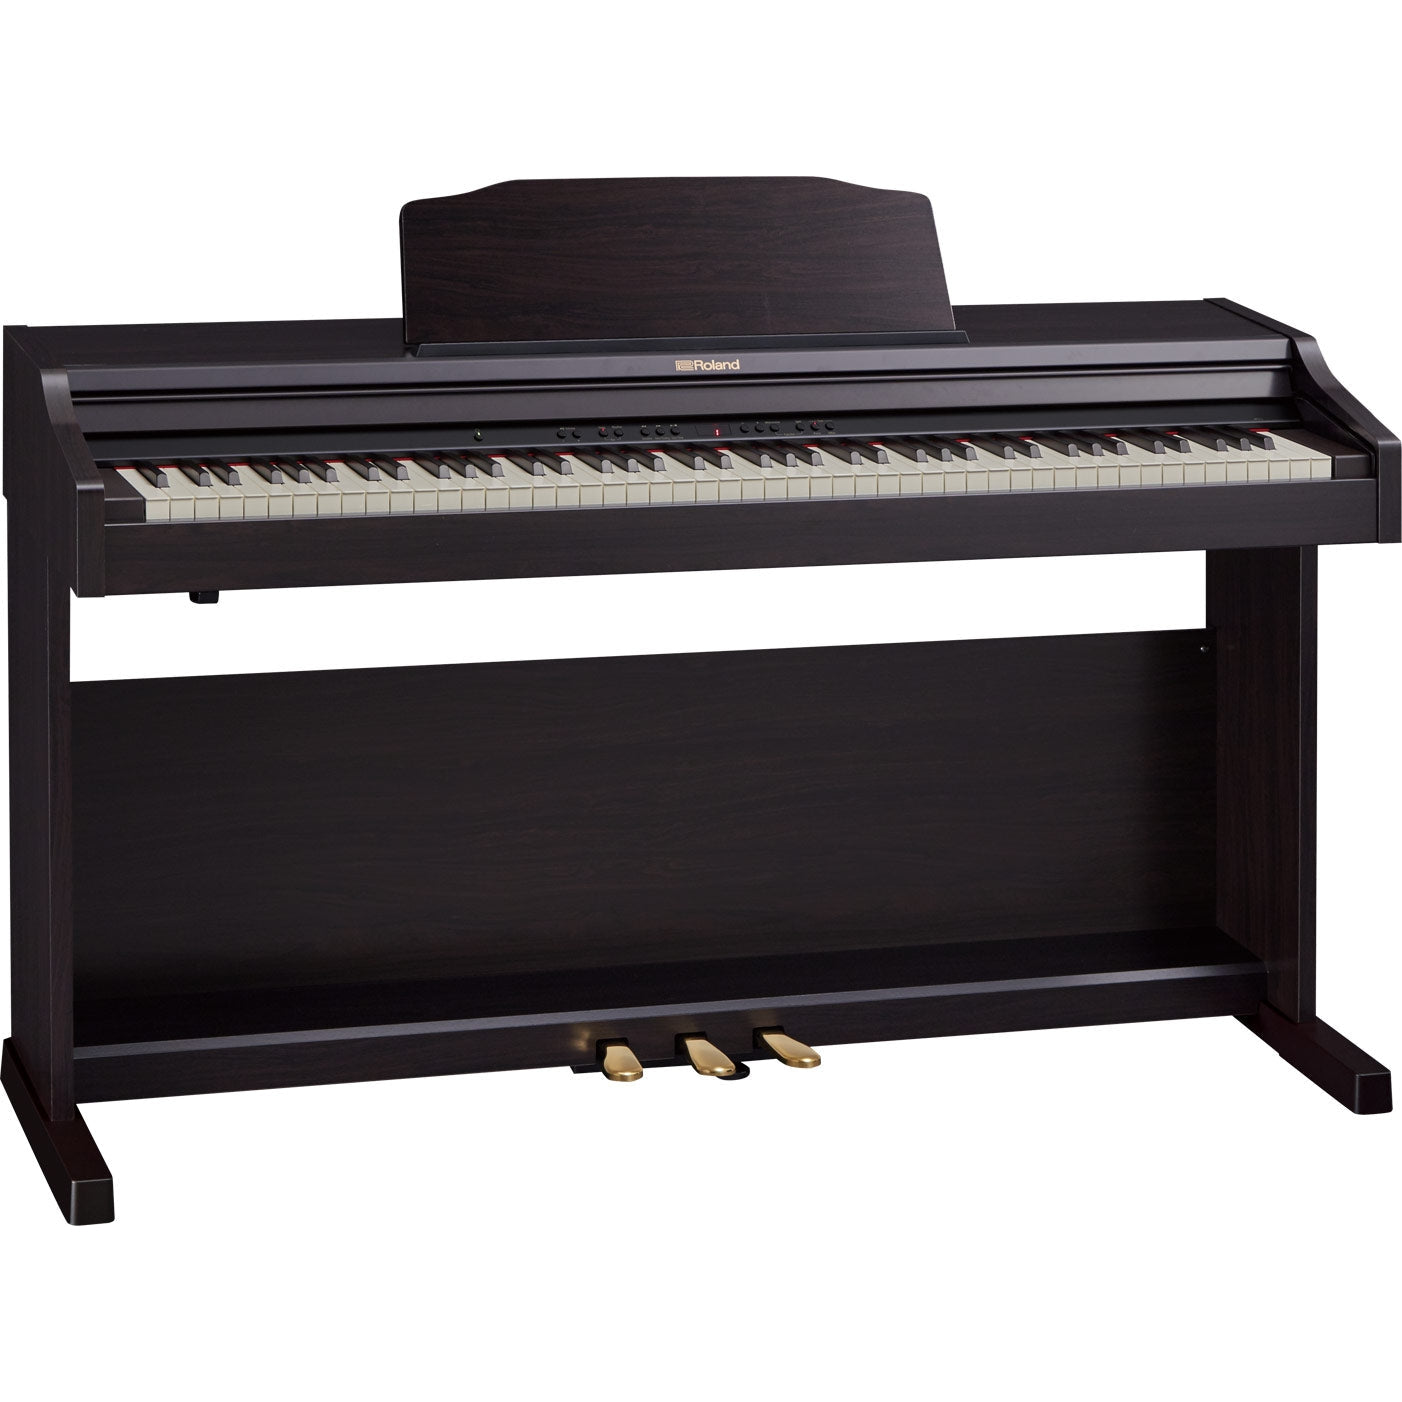 Đàn Piano Điện Roland RP501R